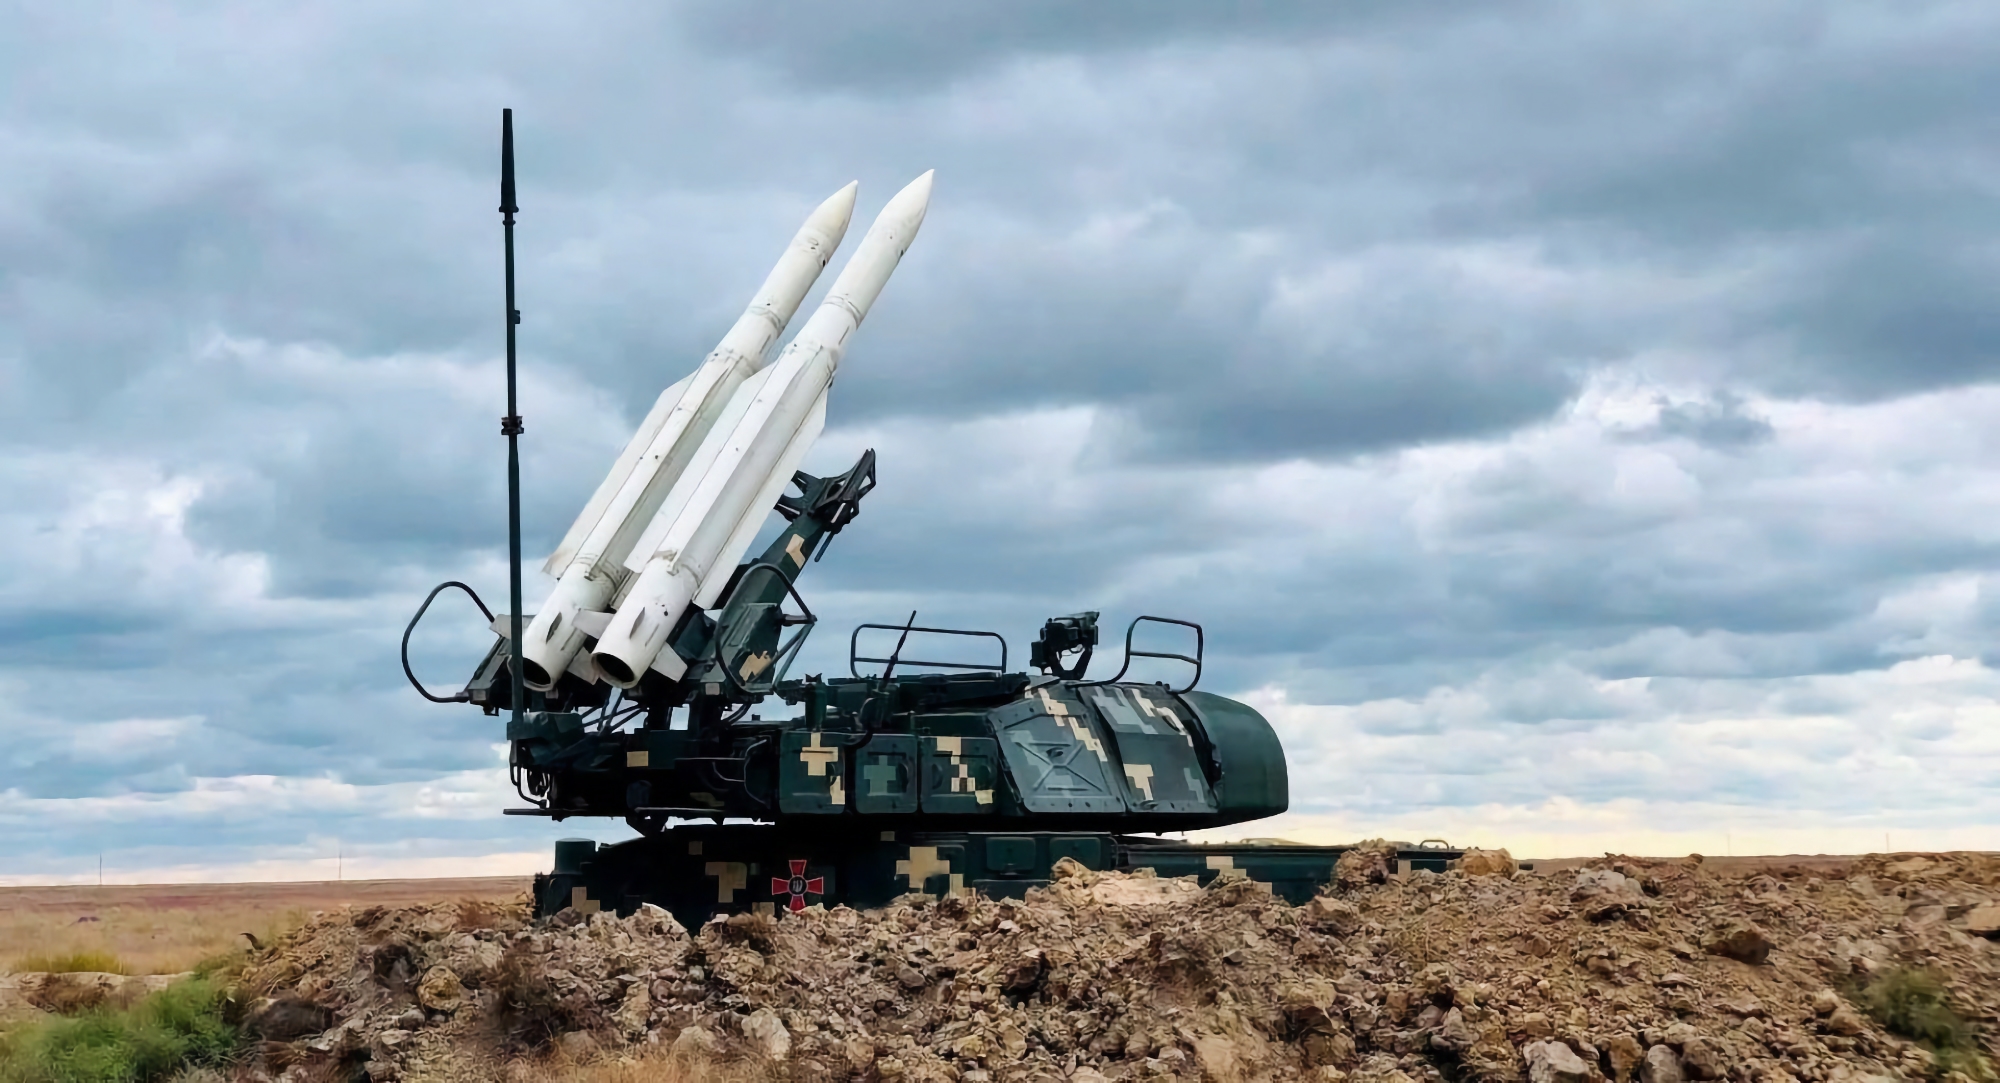 Oficjalnie: USA przystosowują ukraińskie Buk-M1 SAM do wystrzeliwania pocisków RIM-7 Sea Sparrow